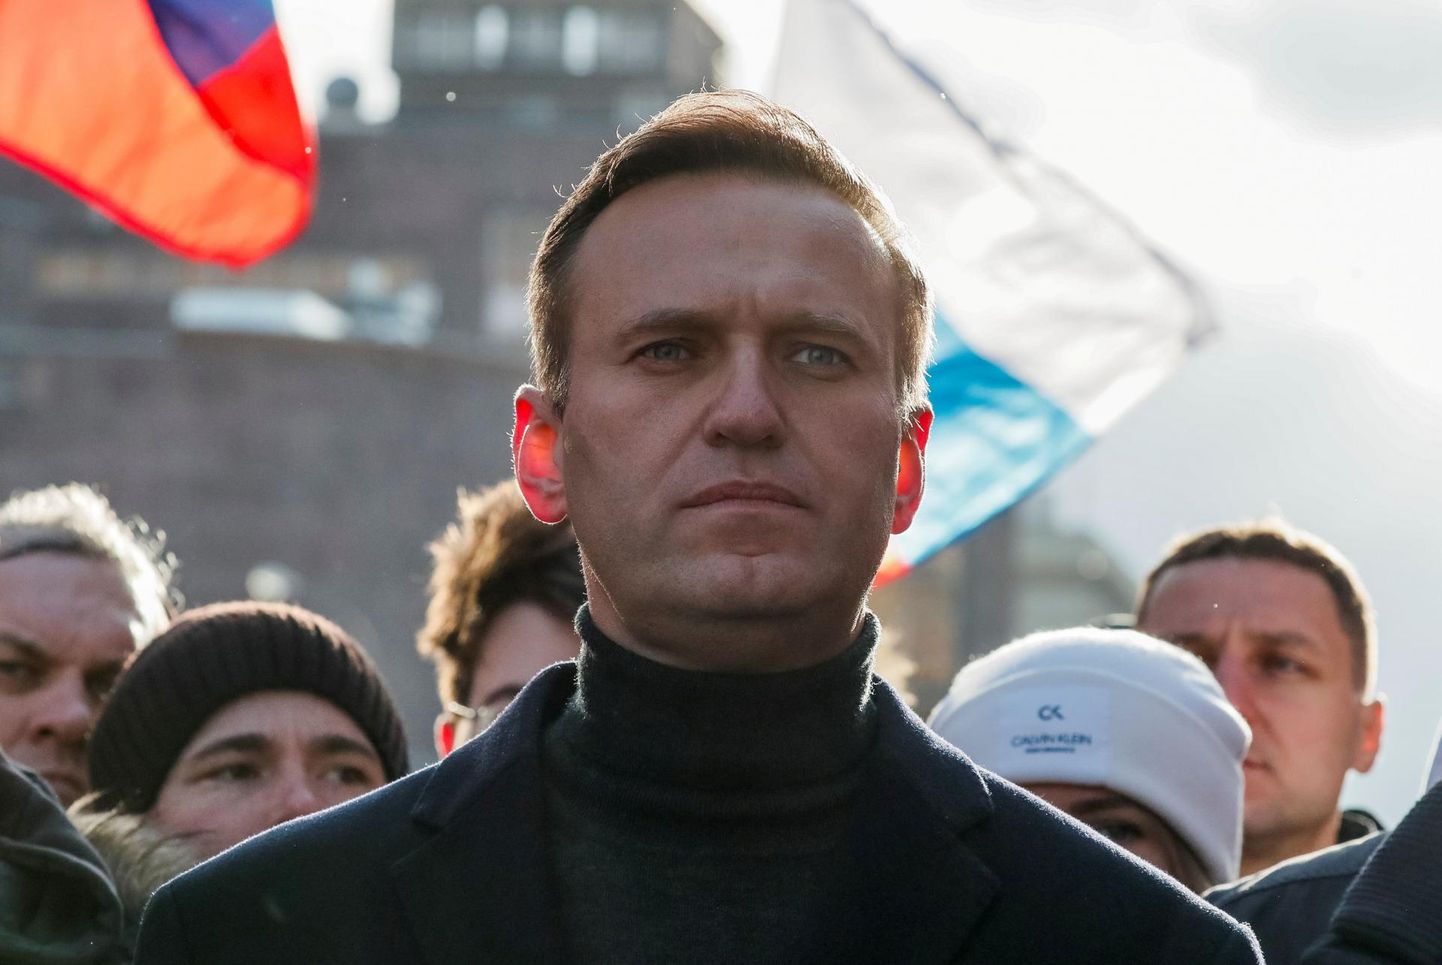 Venemaa opositsioonipoliitik Aleksei Navalnõi tänavu veebruaris Moskvas korraldatud meeleavaldusel põhiseaduse muutmise vastu. FOTO: Shamil Zhumatov/Reuters/Scanpix